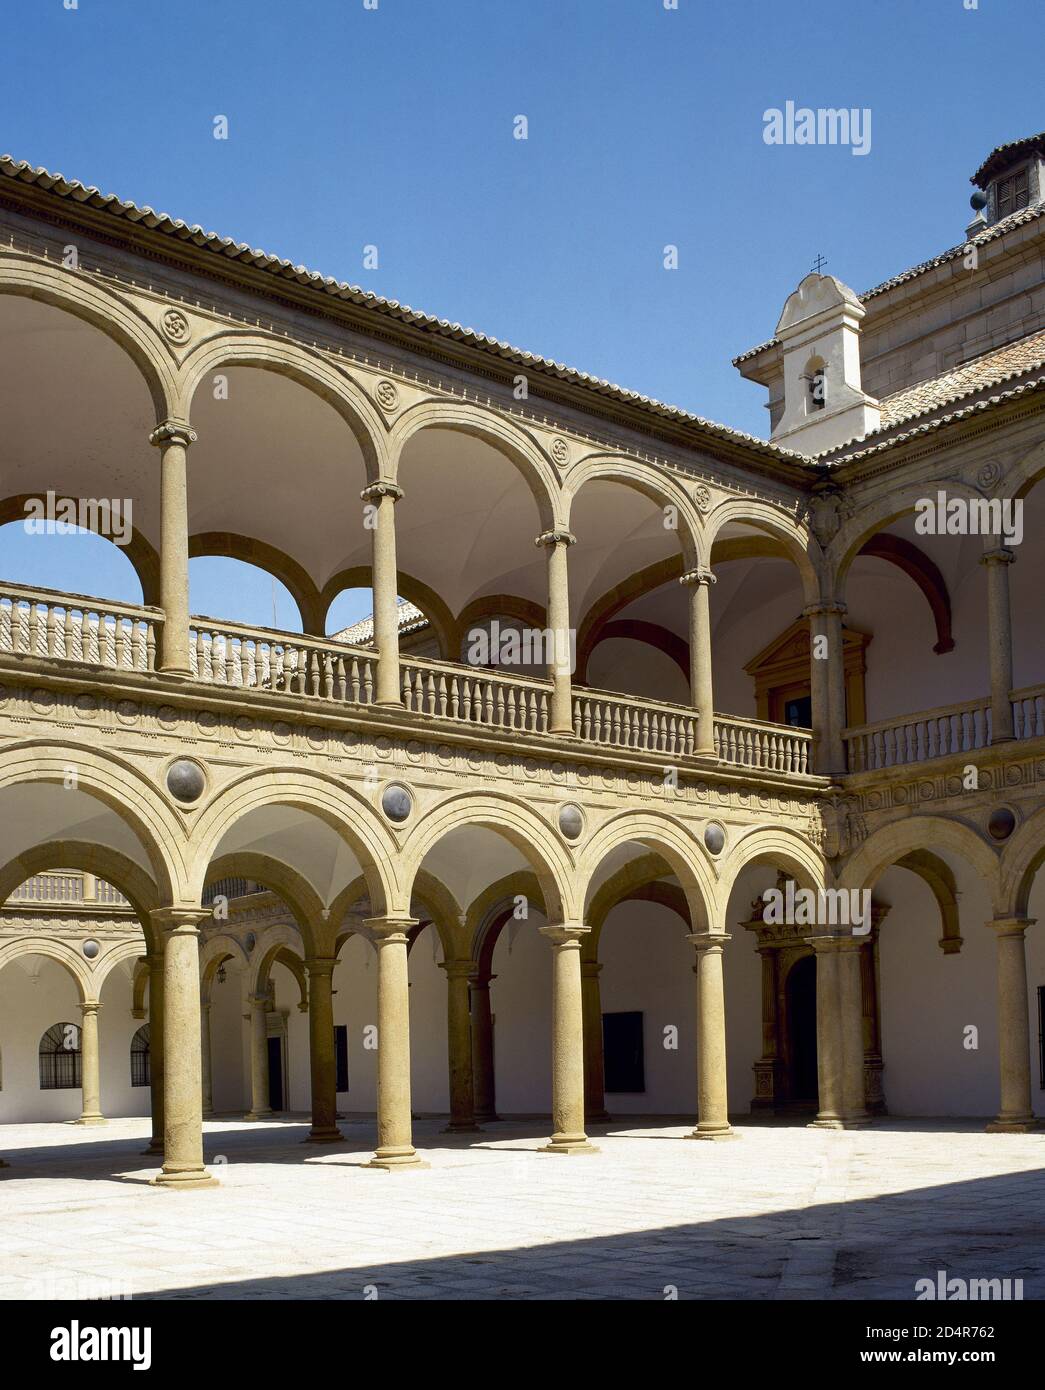 Spanien, Kastilien-La Mancha, Toledo. Hospital de Tavera oder Hospital de San Juan Bautista. Es wurde im Renaissancestil zwischen 1541 und 1603 im Auftrag des Kardinals Tavera erbaut. Das Krankenhaus war Johannes dem Täufer gewidmet. Detail des Doppelsäulenhofes. Stockfoto